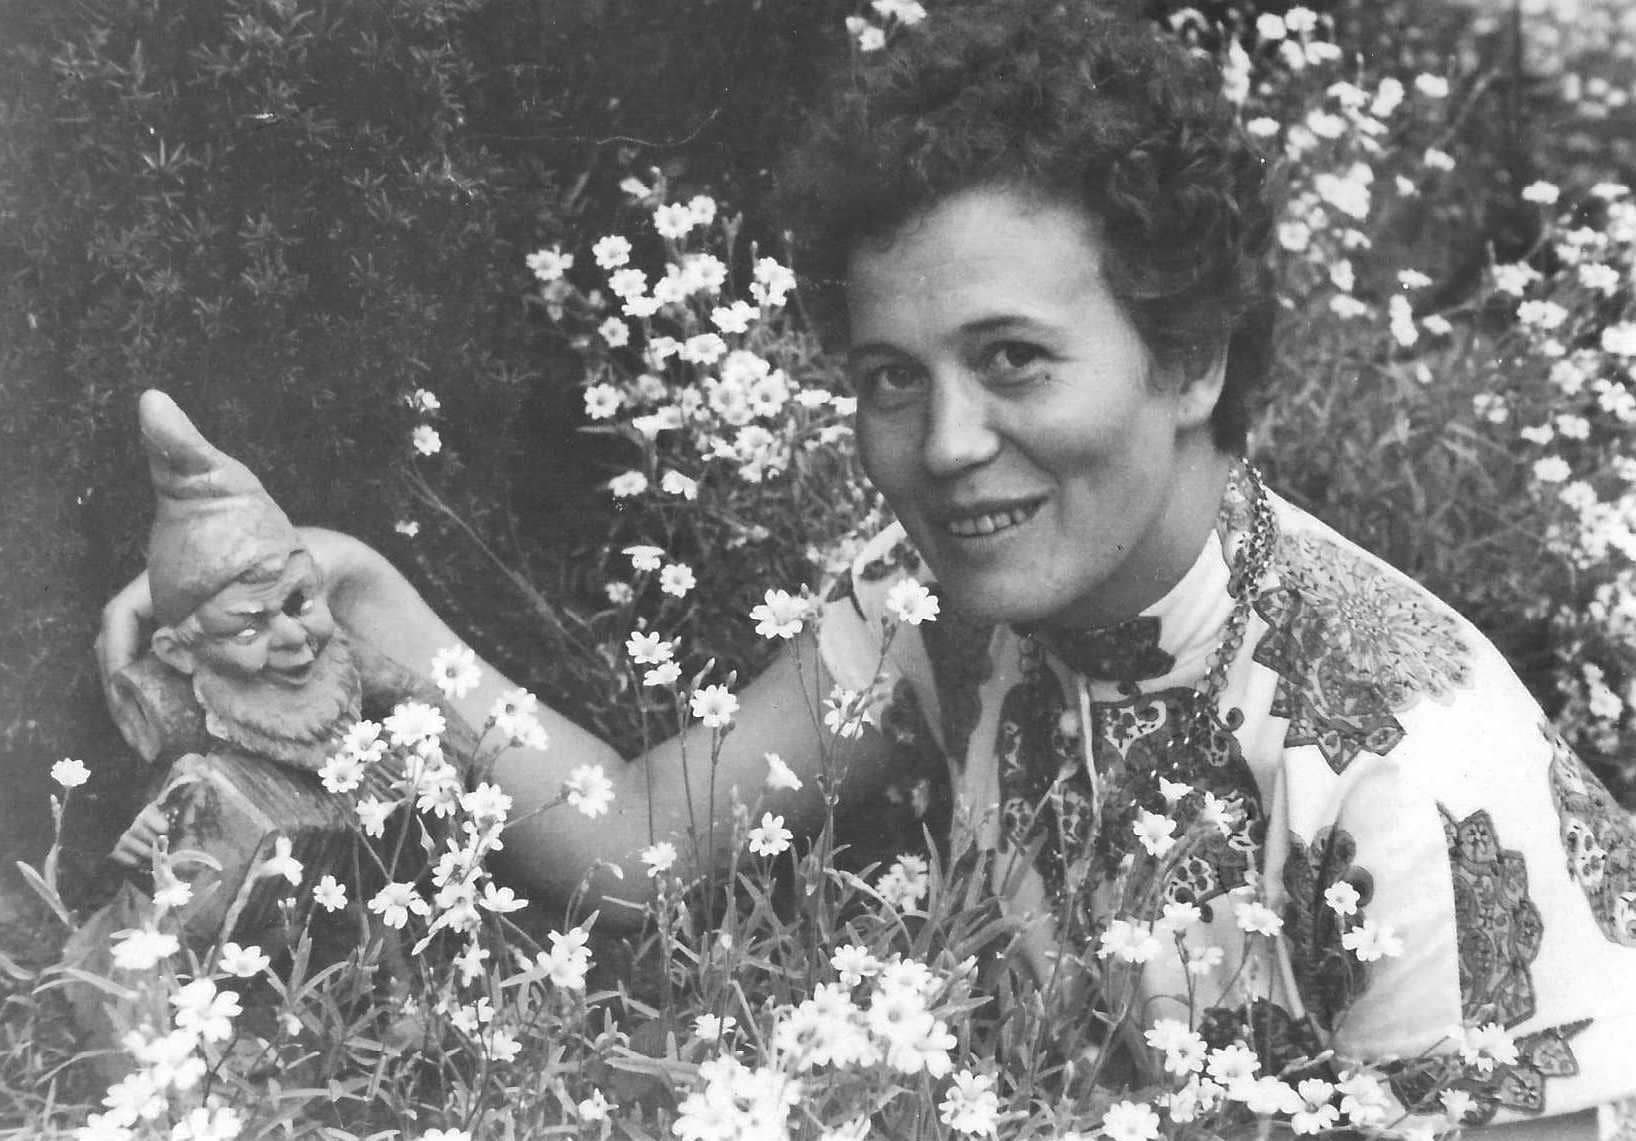 Historisches Foto von Inge Karsch von 1956 inmitten von Blumen mit einem Gartenzwerg (aus dem Archiv der Galerie Nierendorf)